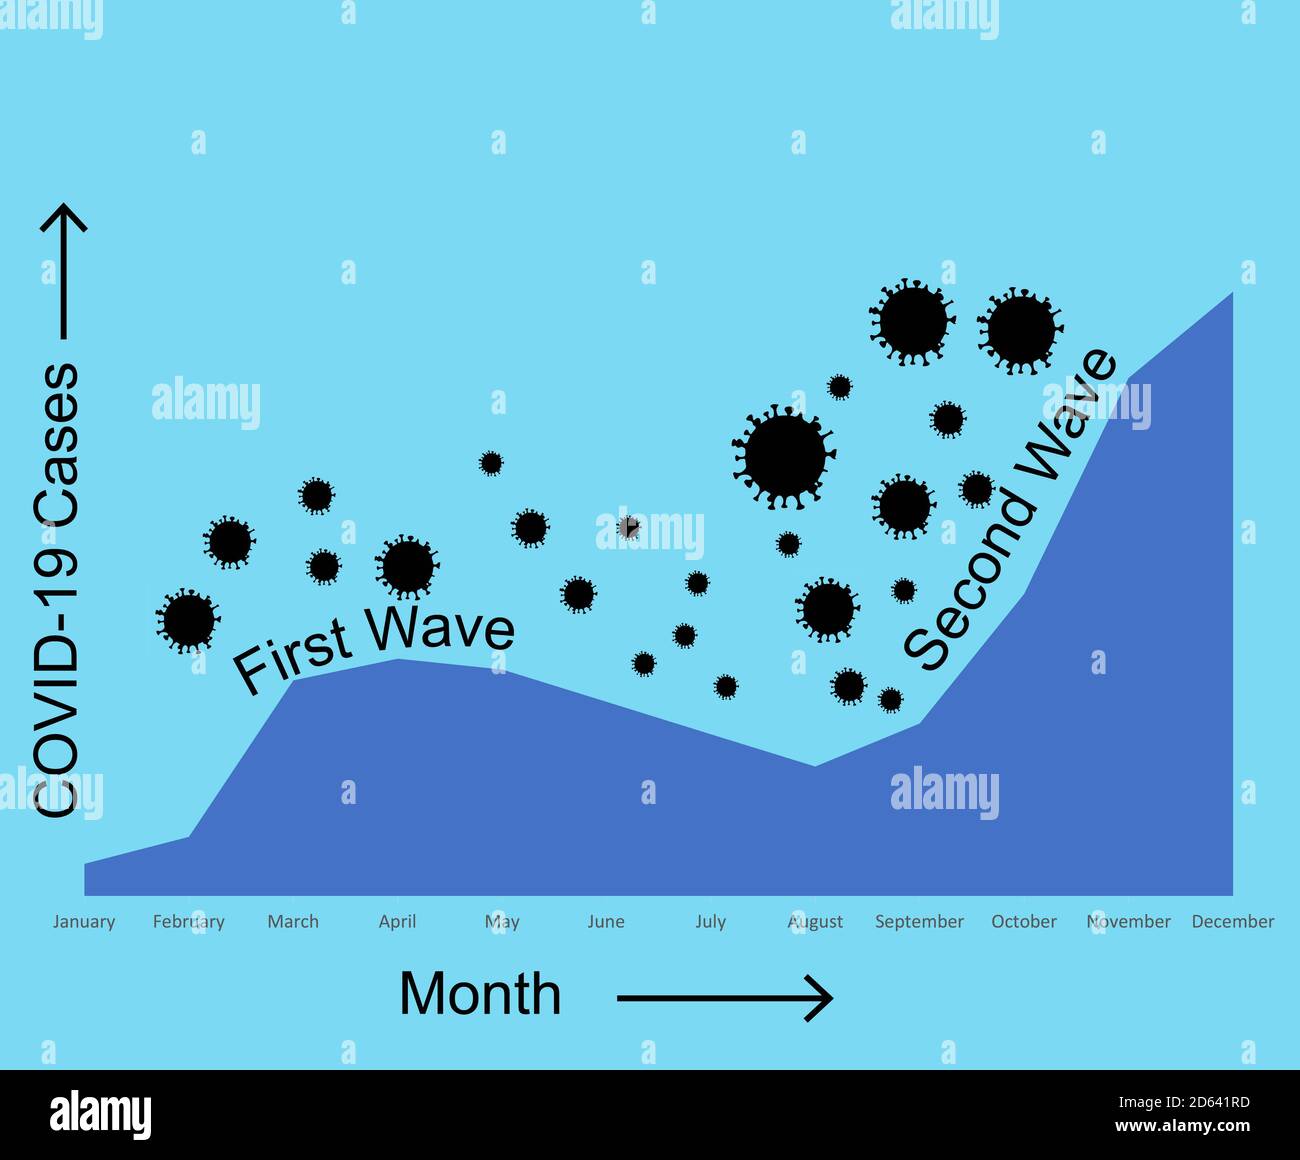 Las estadísticas muestran que la segunda ola de coronavirus aumenta rápidamente durante el otoño ilustración vectorial Foto de stock